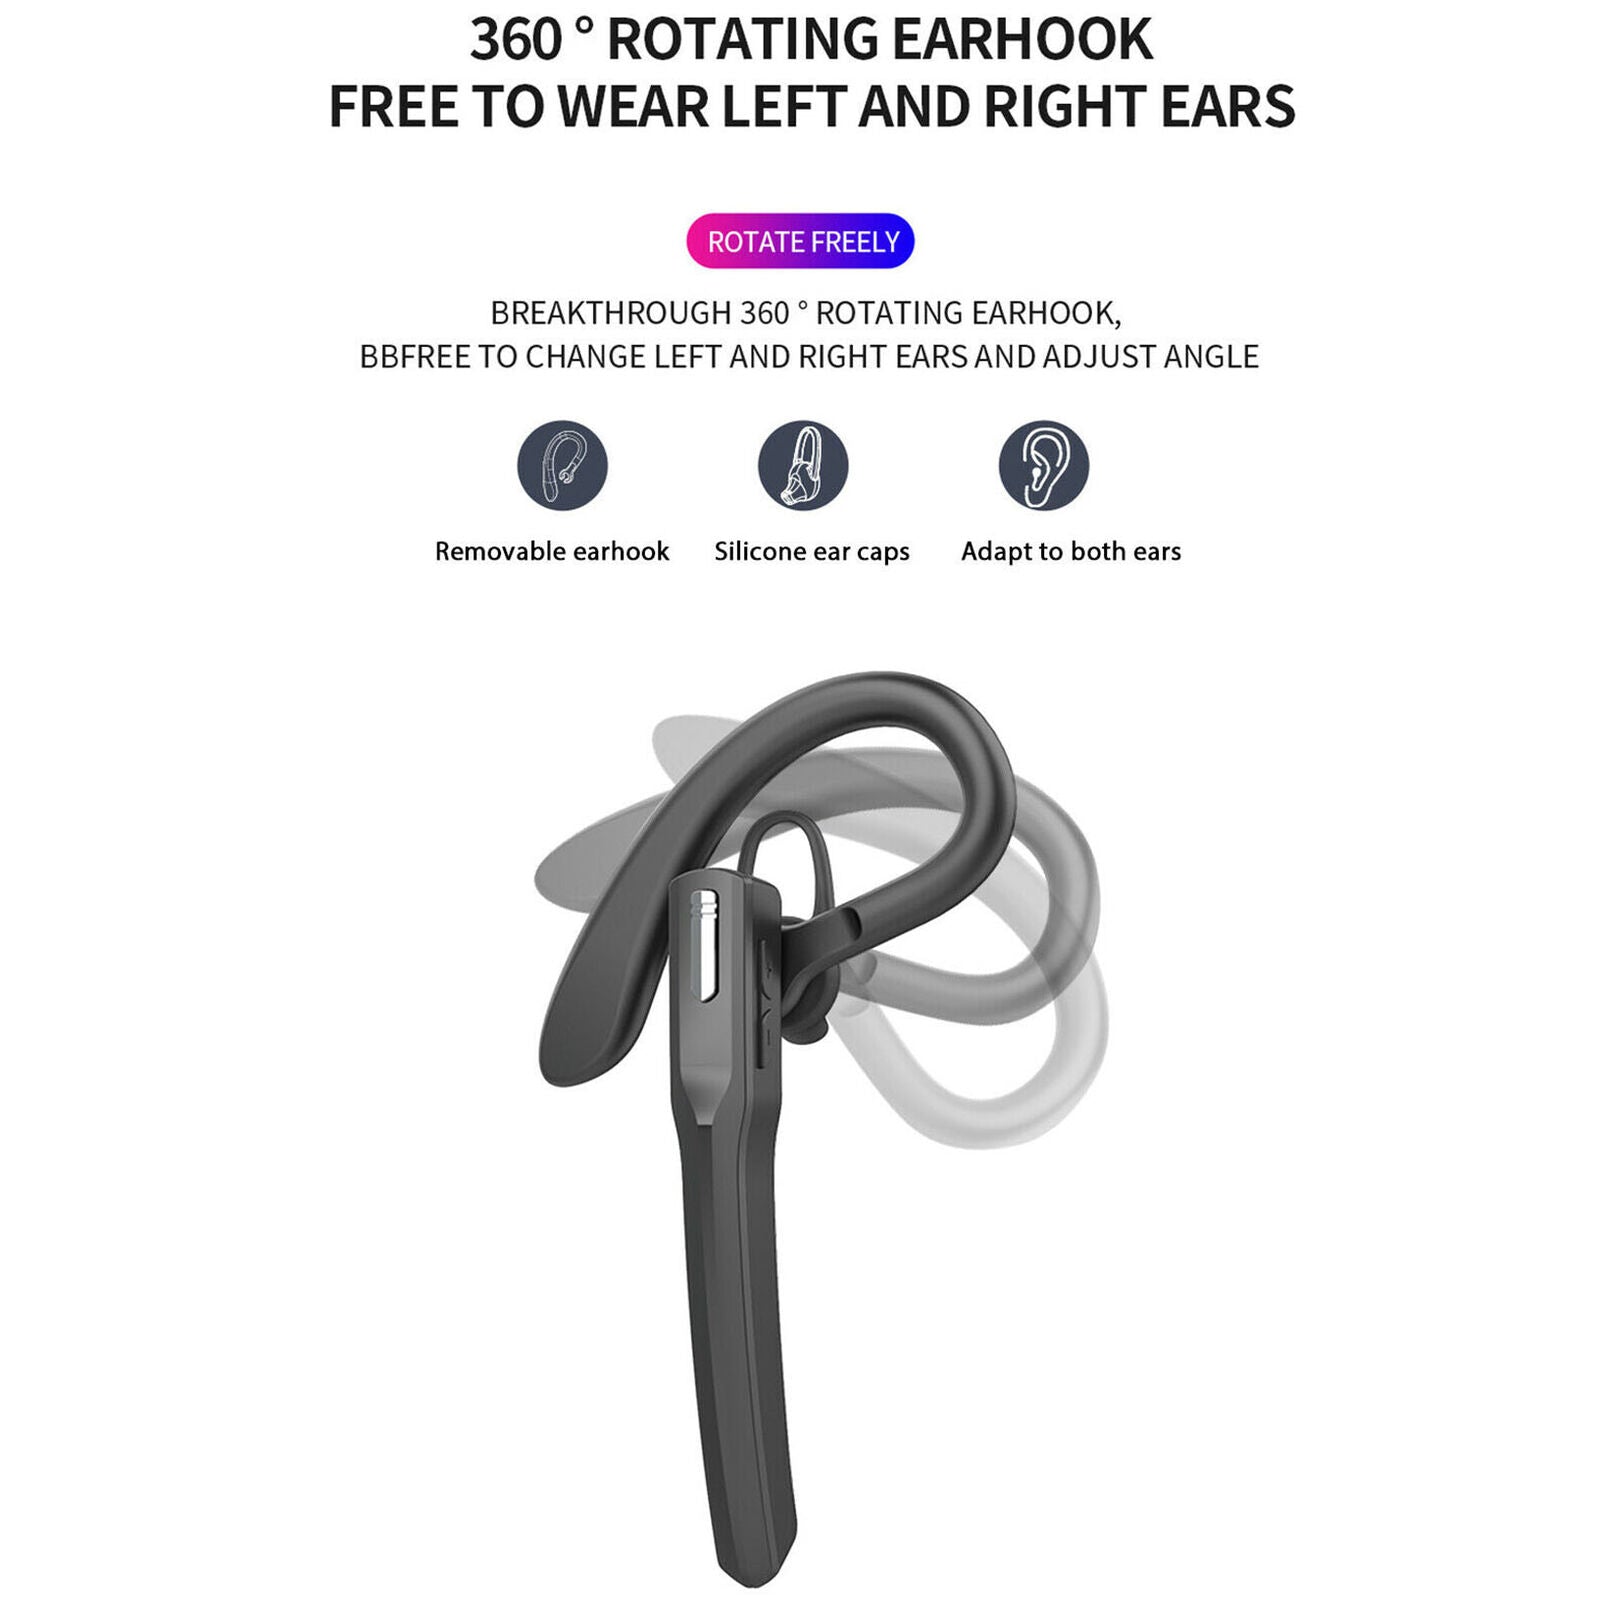 Bluetooth 5.0 Wireless Earpiece Trucker Handsfree Earphone In Ear Earbud Headset